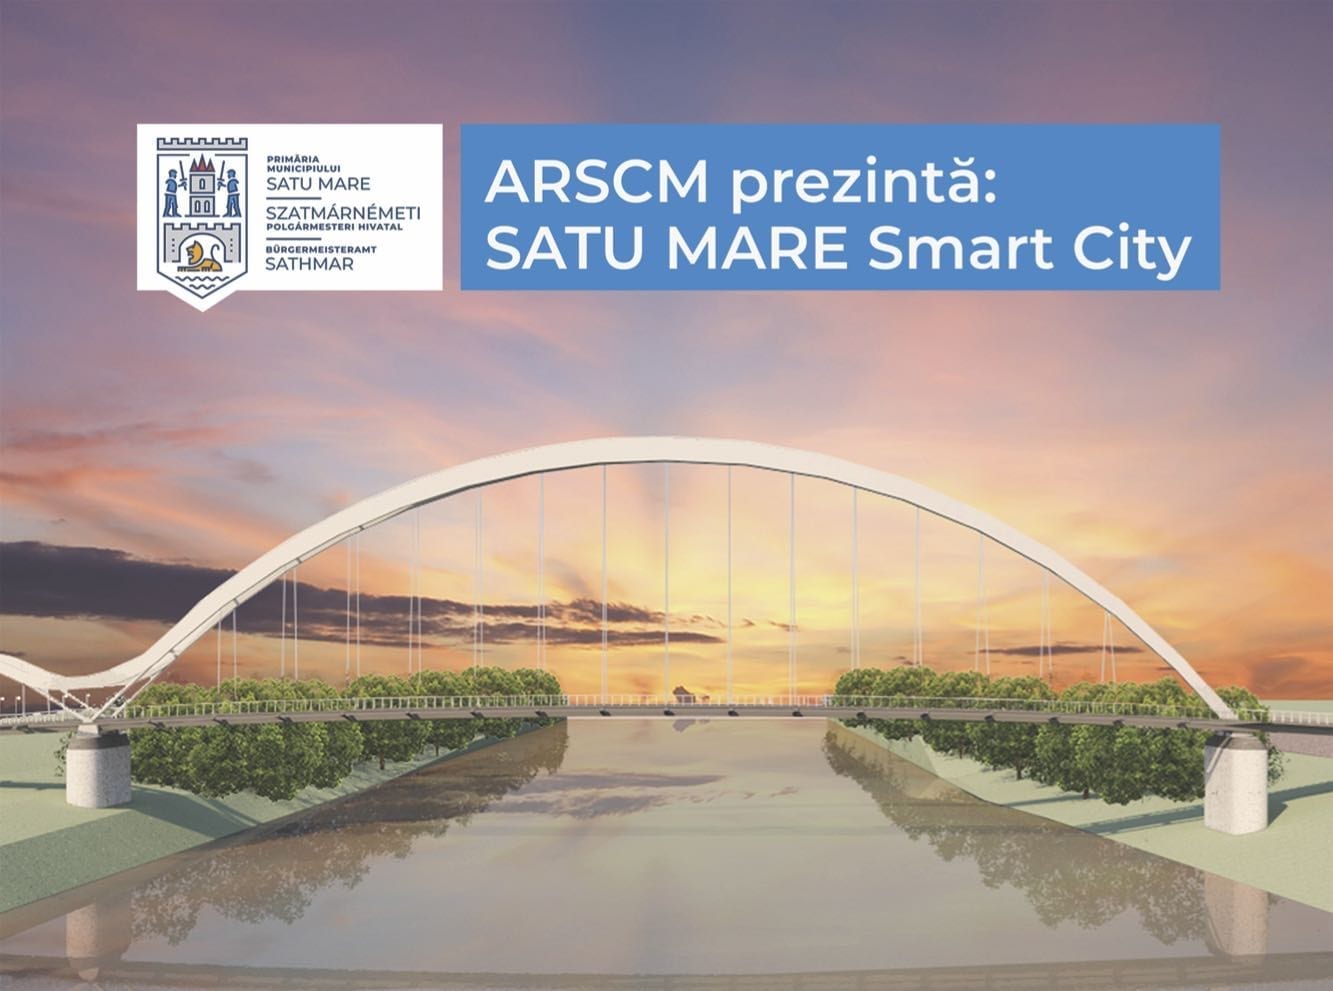 Asociația Română pentru Smart City alături de unii dintre cei mai importanți parteneri din industrie este parte activă în lansarea proiectului Satu Mare Smart City.